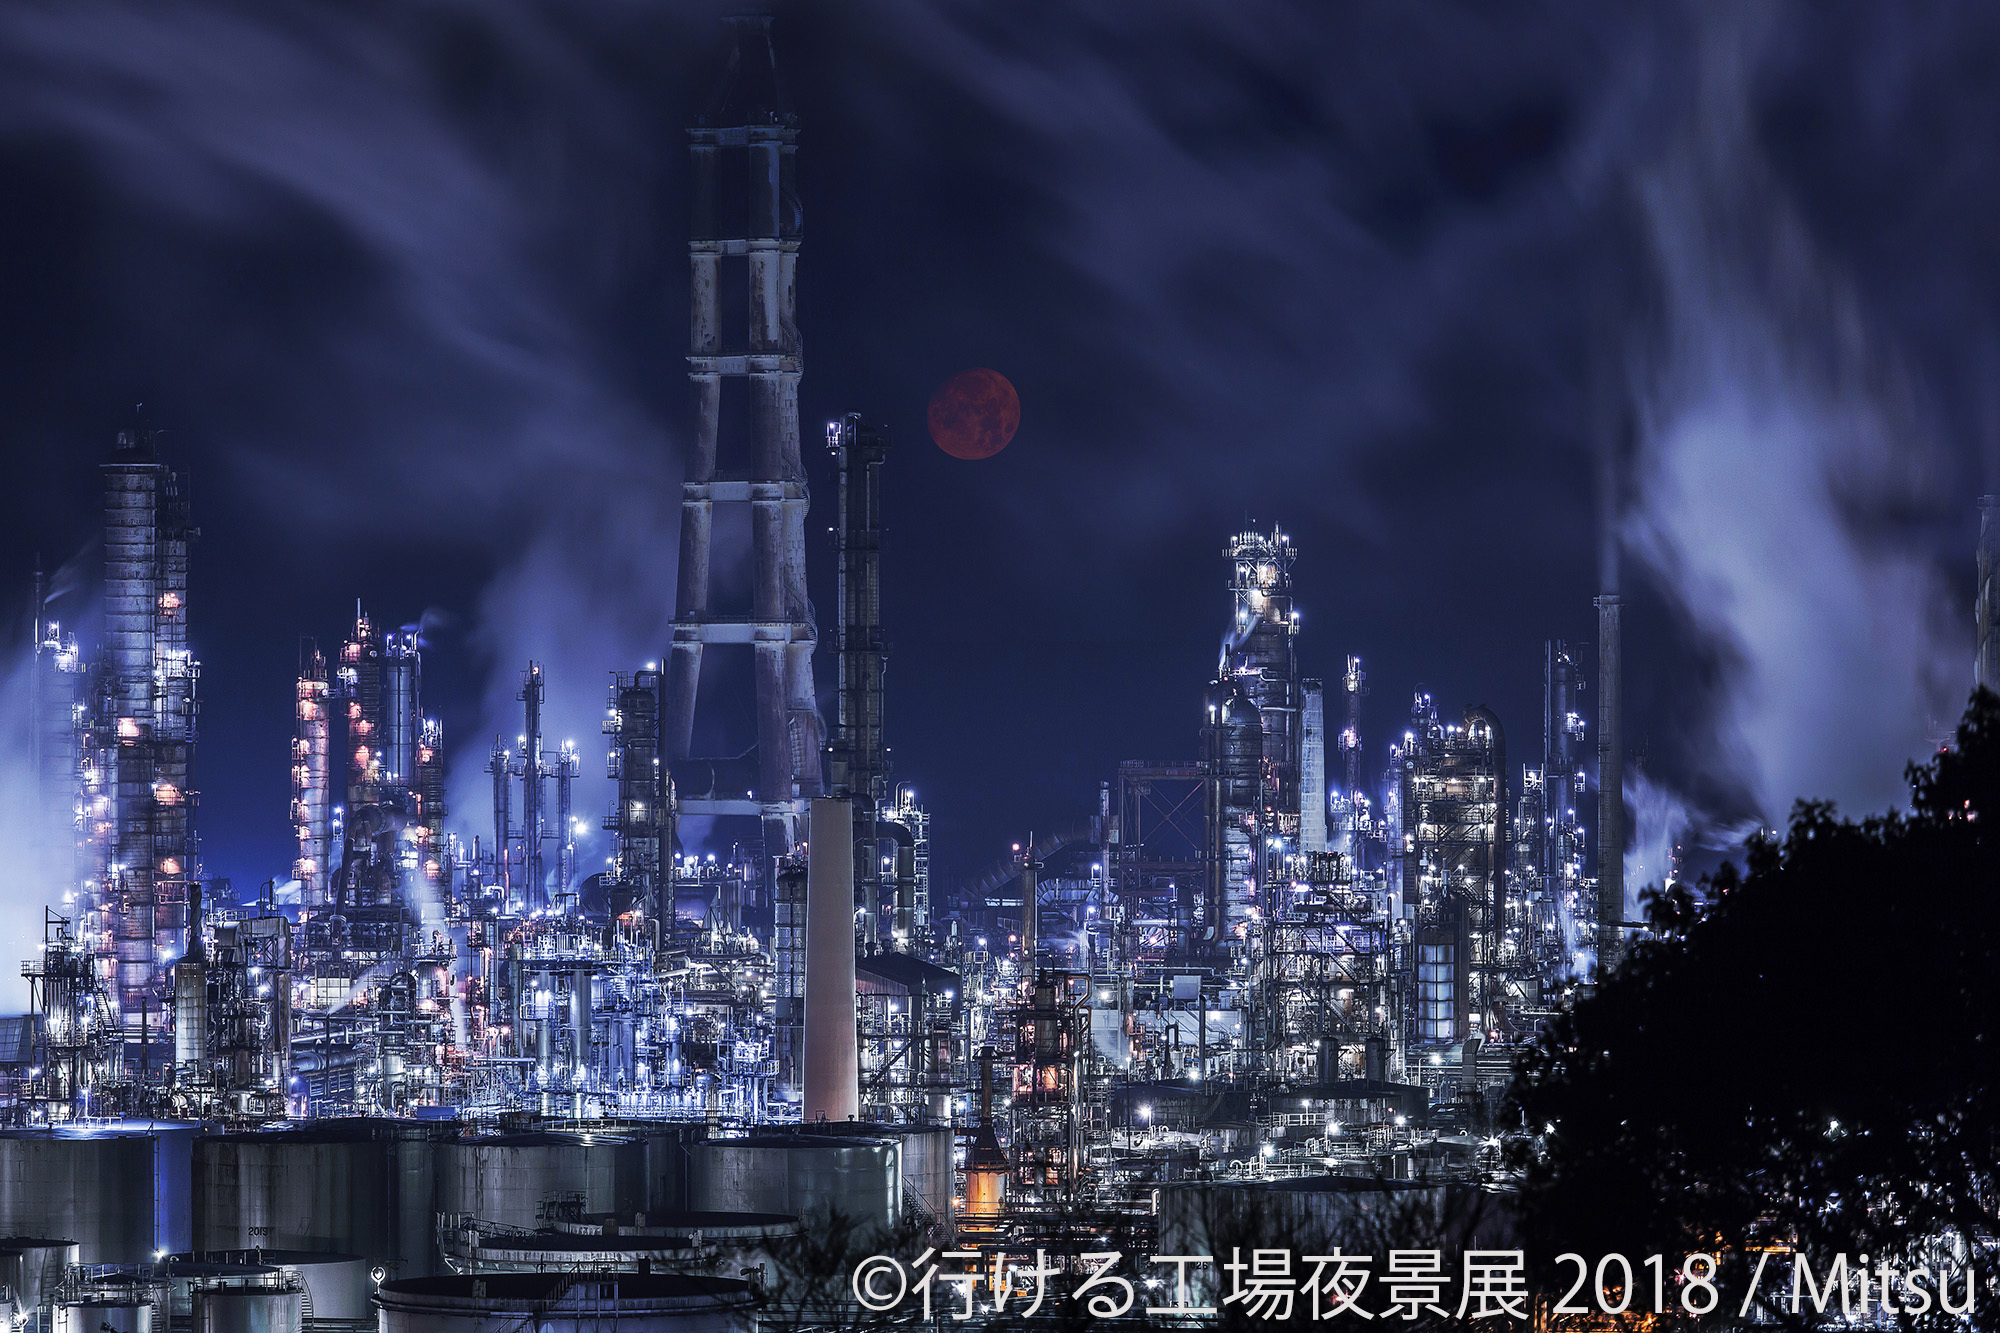 近未来感あふれる 工場夜景 約0作品を アクセス情報付きで展示 東京 名古屋で写真展開催 Spice エンタメ特化型情報メディア スパイス